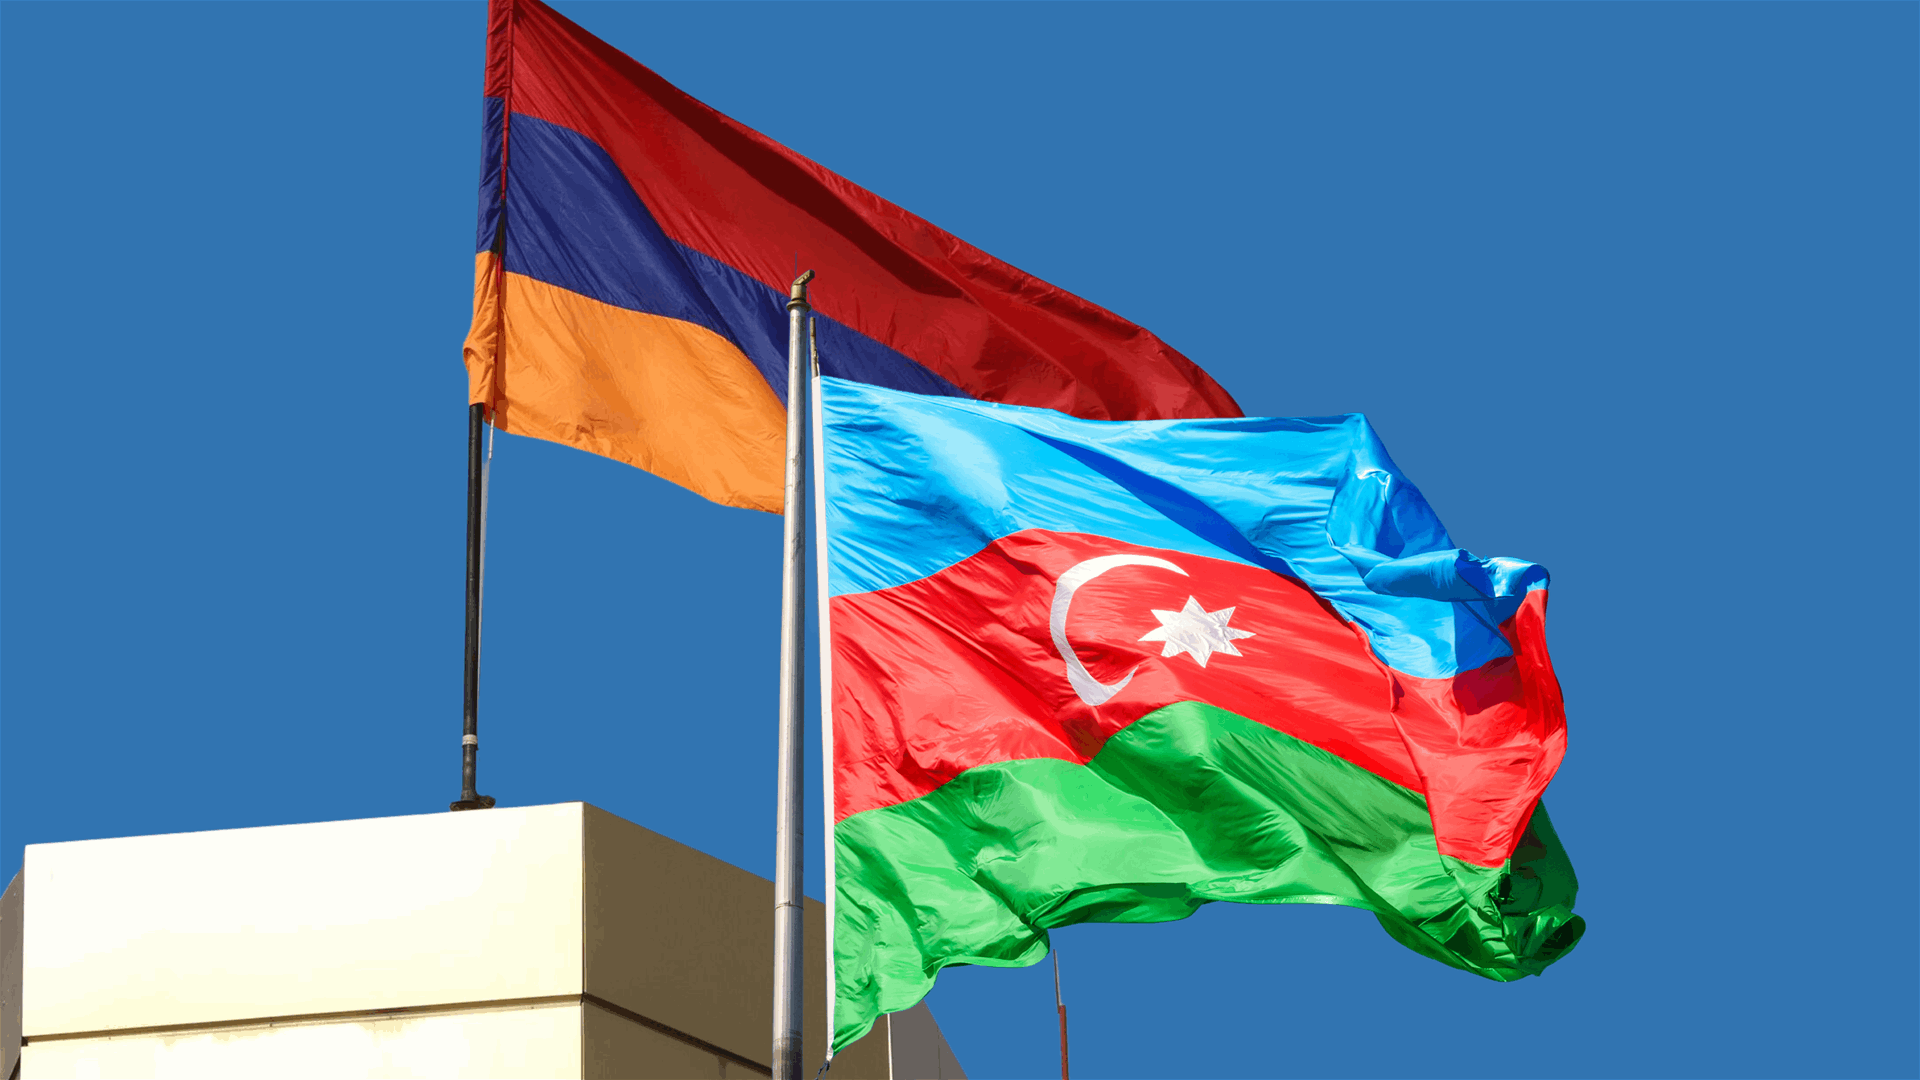 Armenia, Azerbaijan pledge to take steps to normalize relations